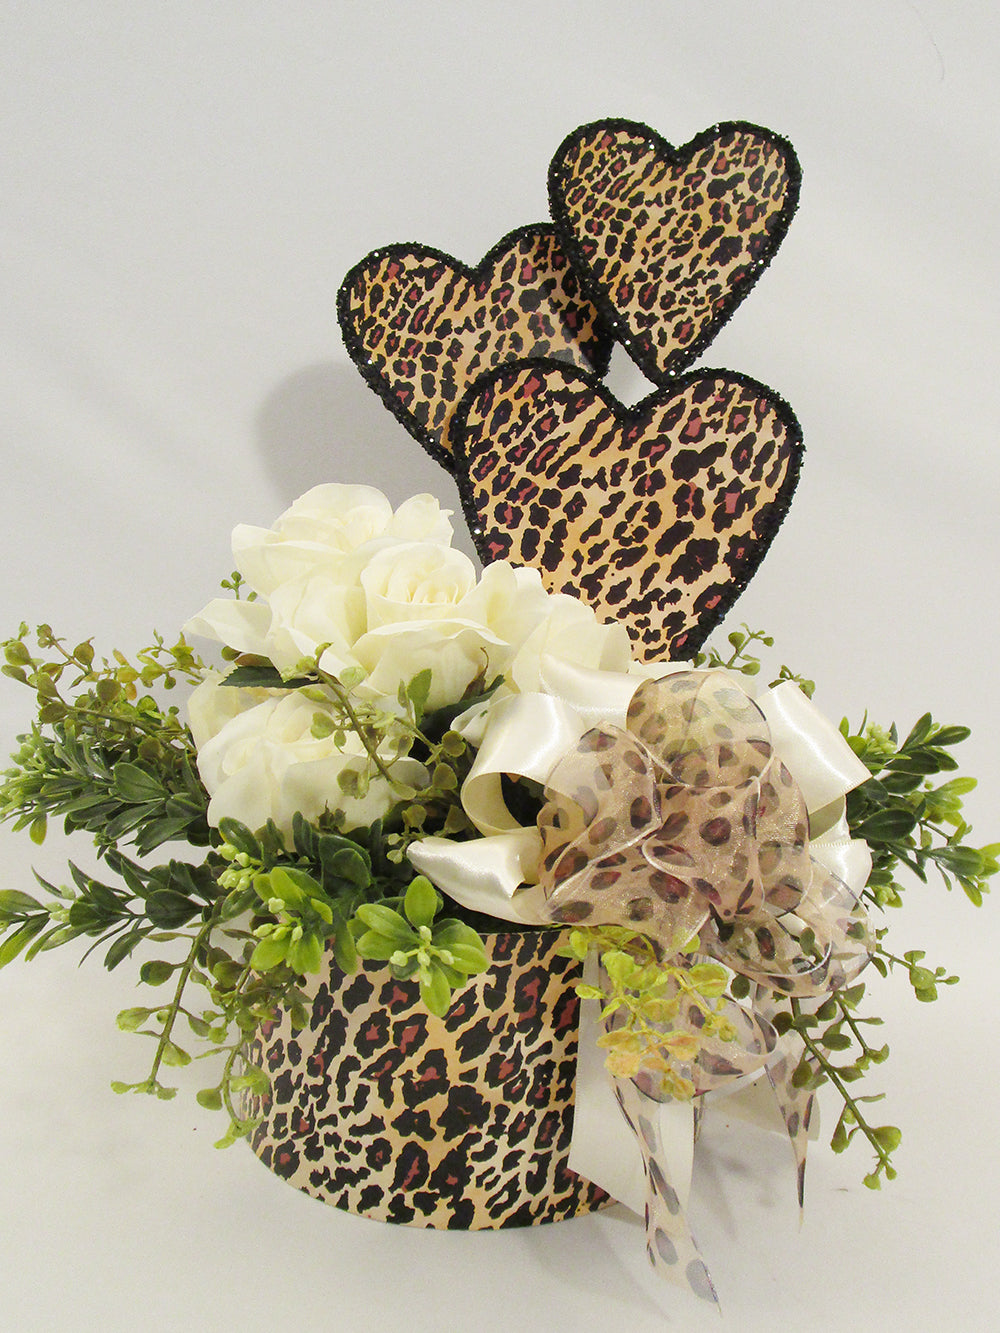 Leopard Valentine Centerpiece - Designs by Ginny